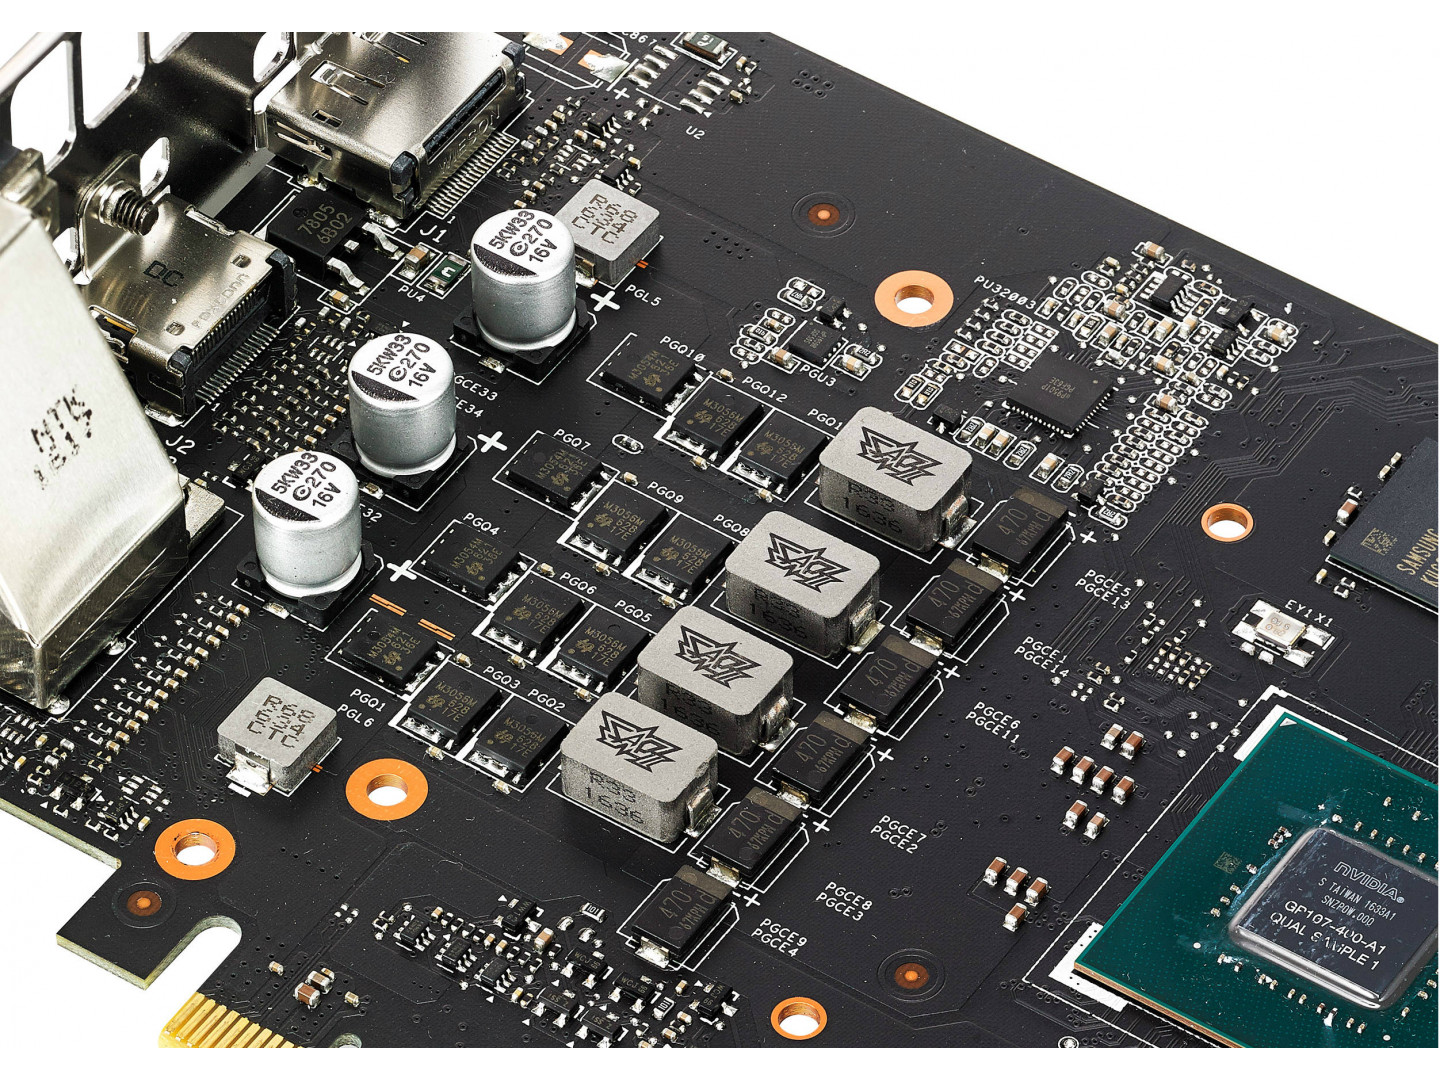 Відеокарта GeForce GTX1050 Ti 4 Gb DDR5, ASUS (STRIX-GTX1050TI-4G-GAMING) - зображення 3